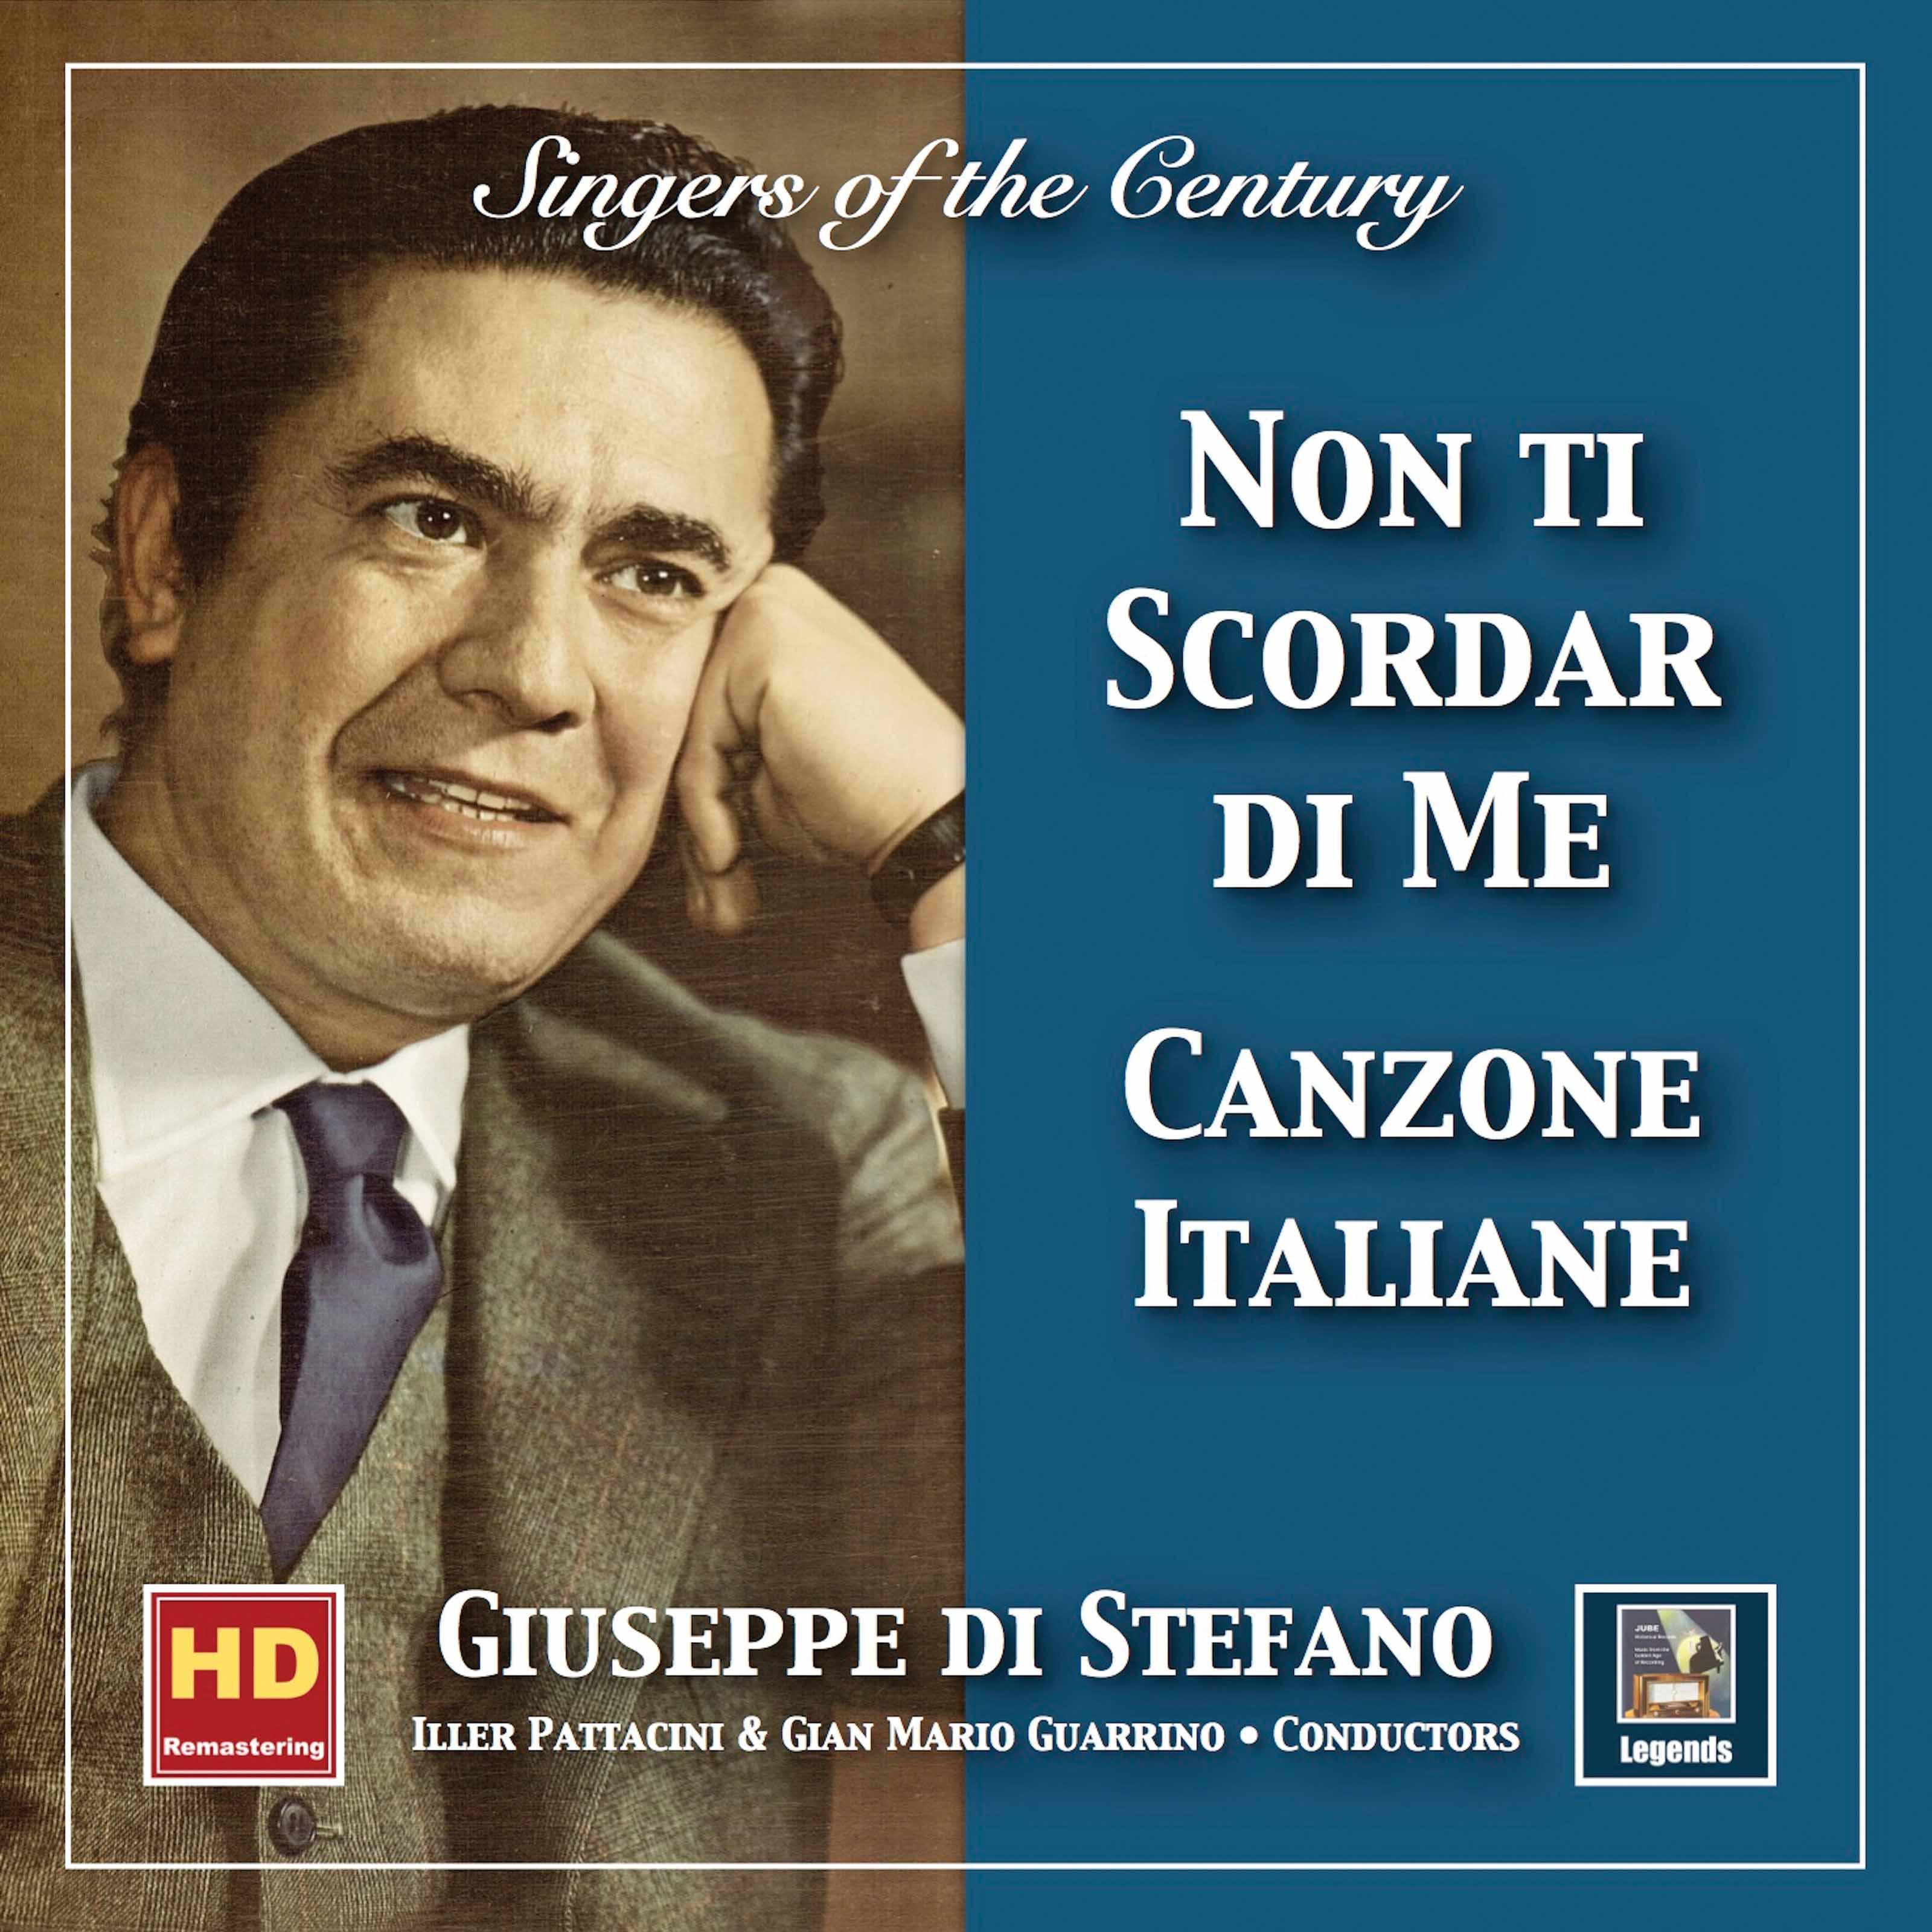 Singers of the Century: Giuseppe di Stefano Canzone italiane " Non ti scordar di me" 2019 Remaster